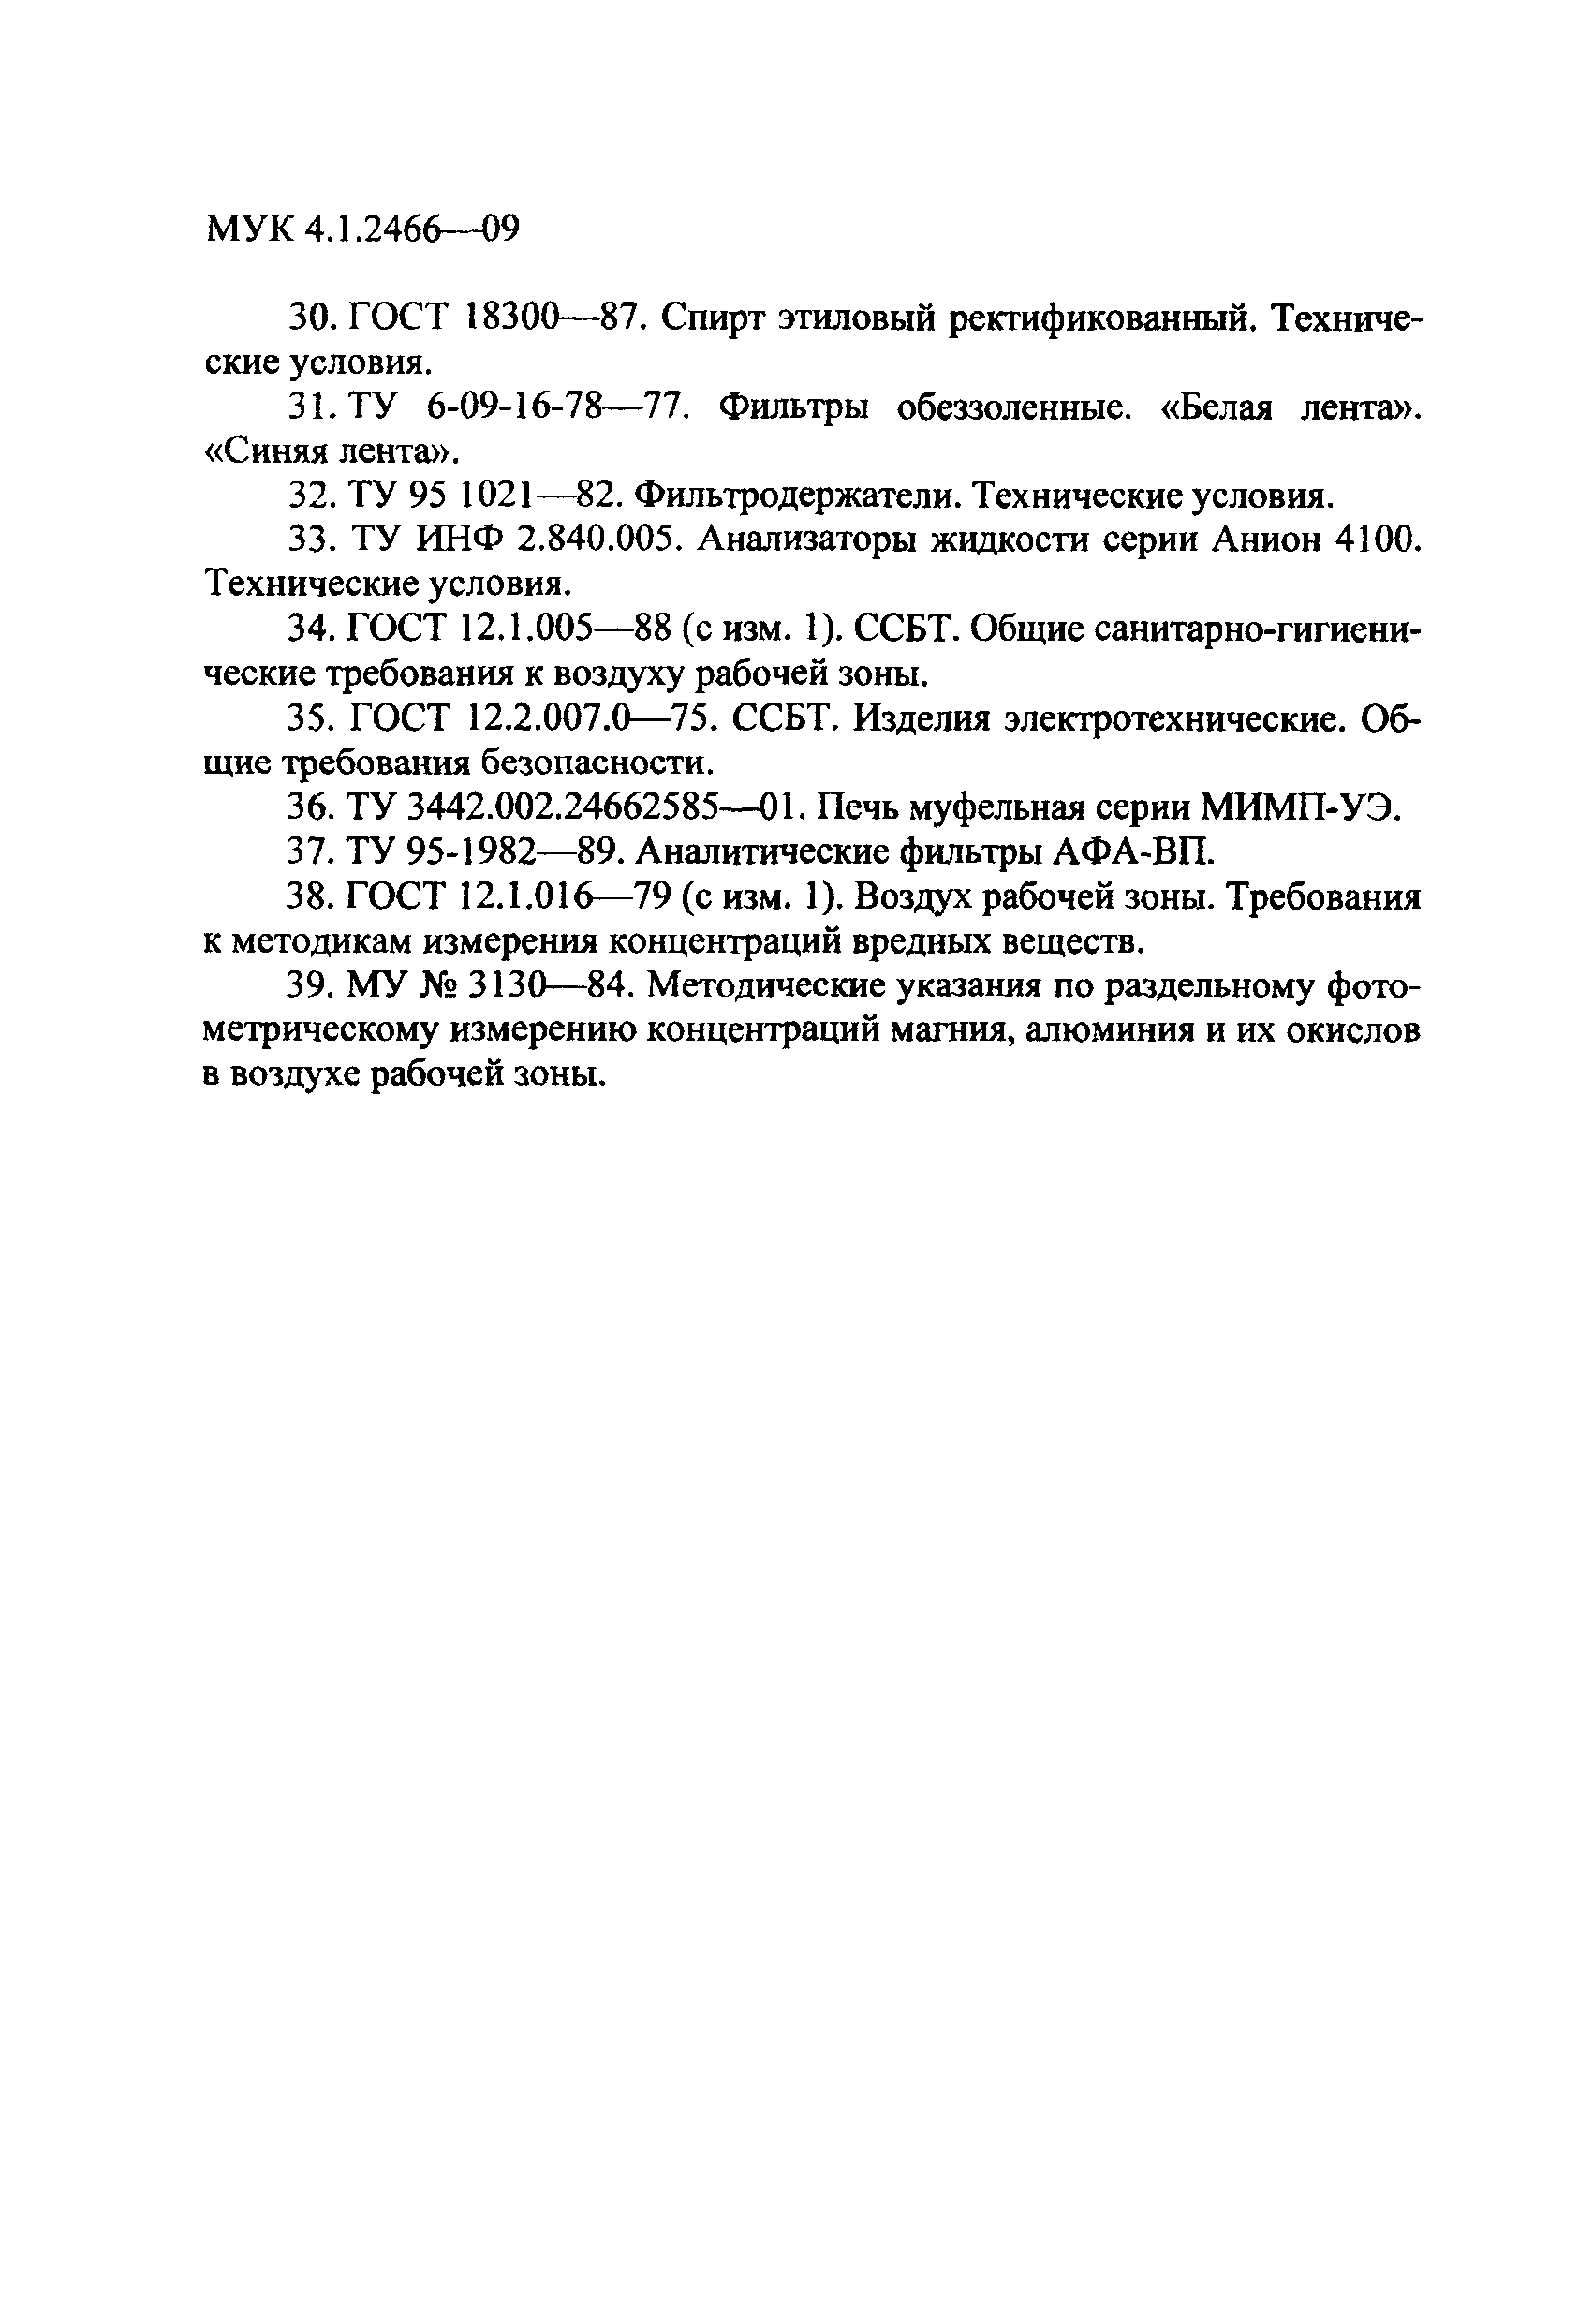 МУК 4.1.2466-09